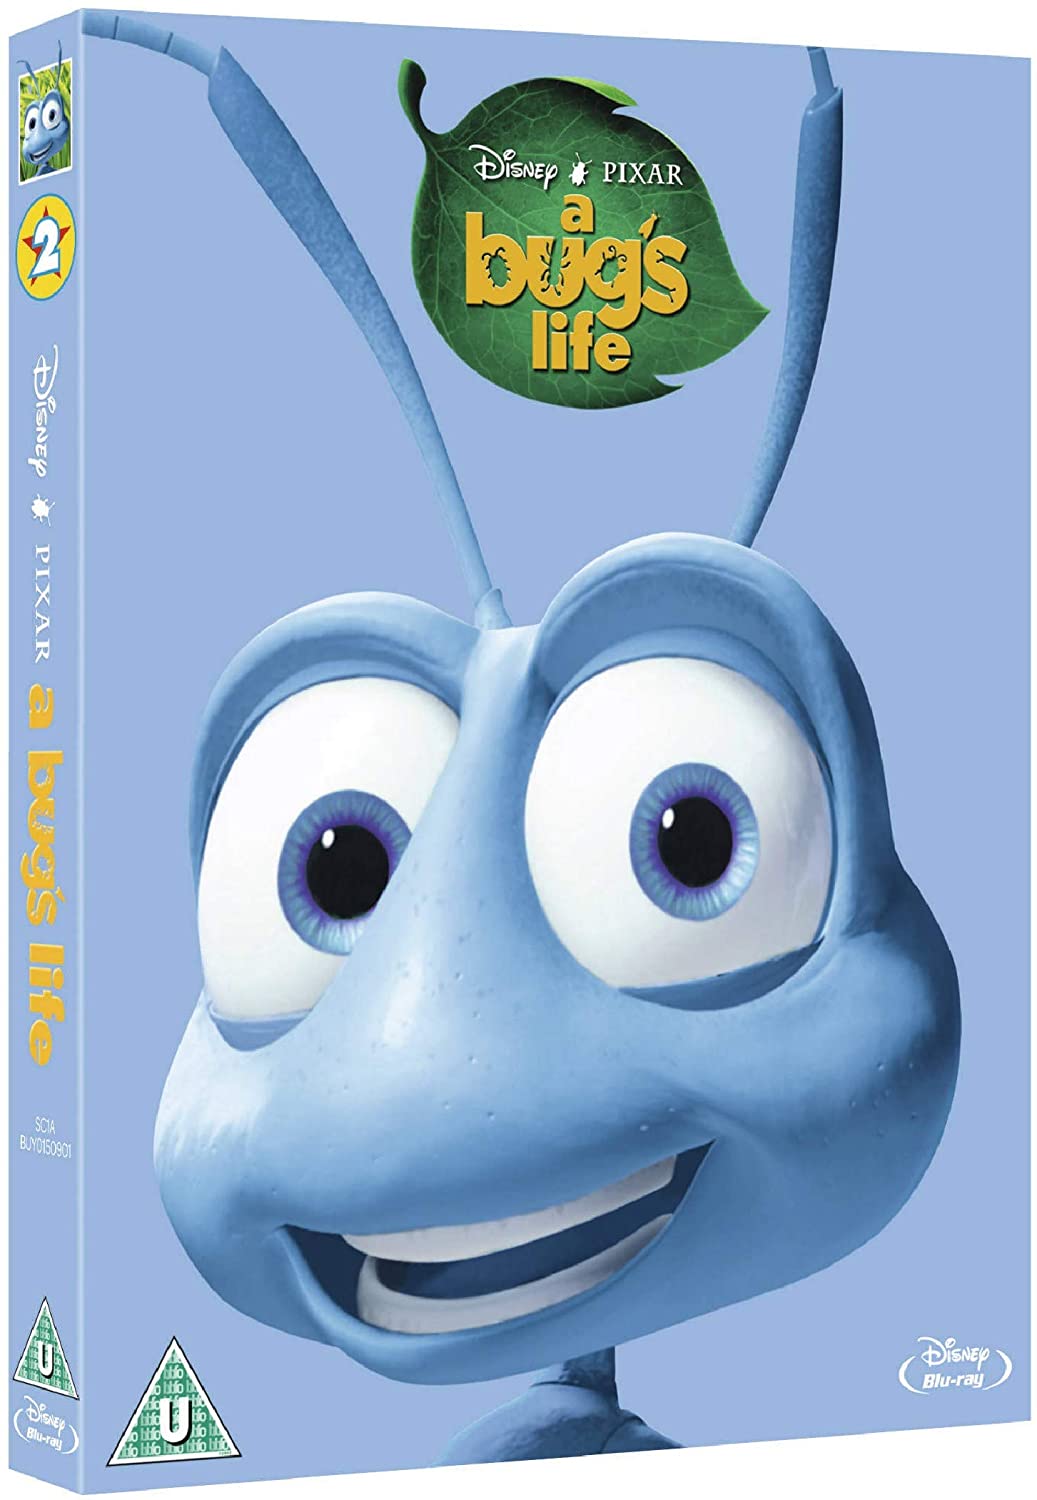 La vita di un insetto [Blu-ray]